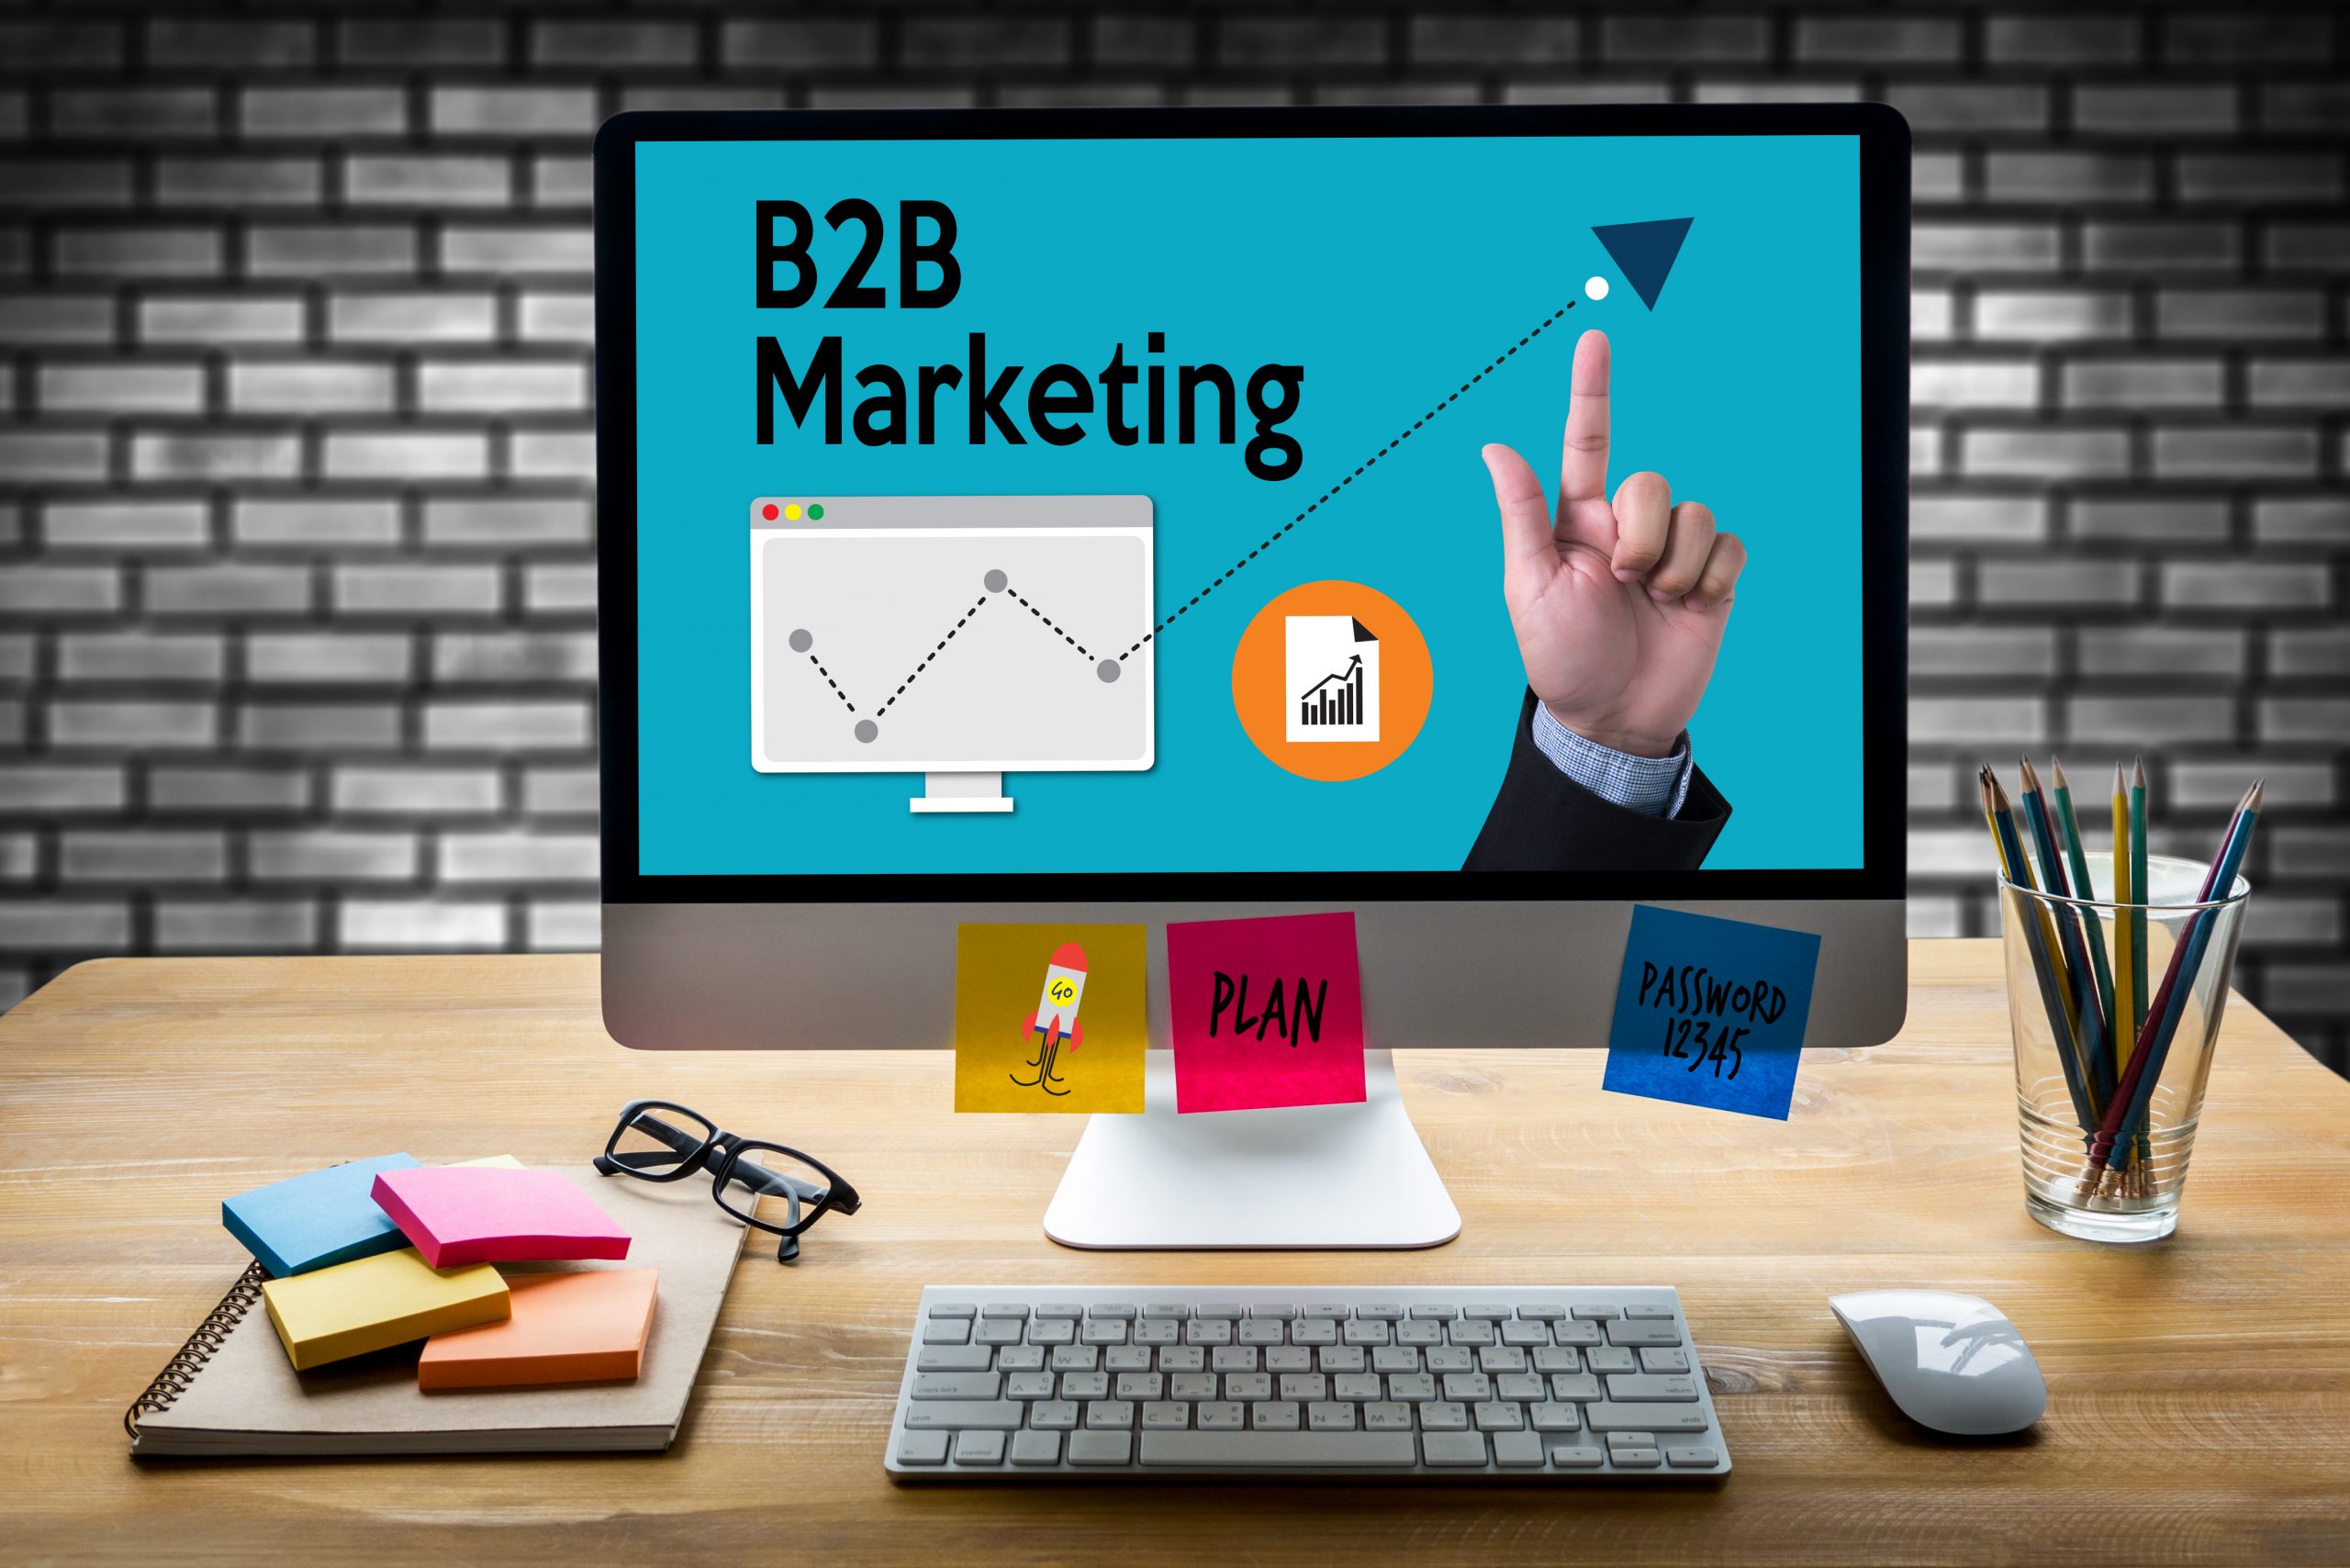 Marketing B2B: ambientes nichados e relevantes para engajar e gerar negócios